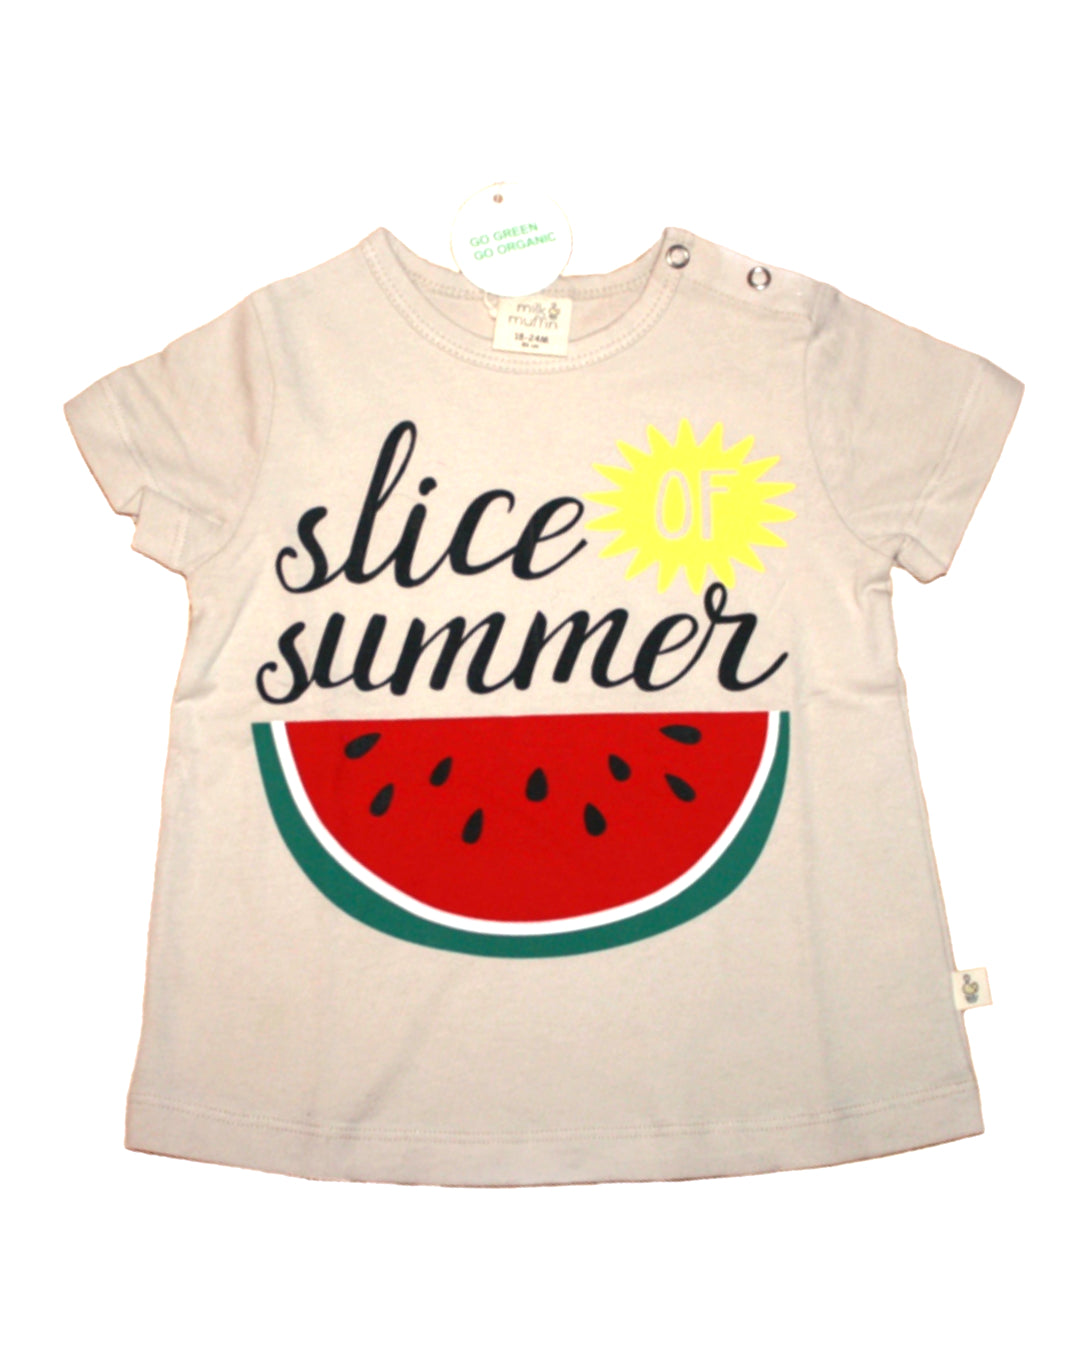 T-Shirt in Beige mit Melone slice summer aus Biobaumwolle